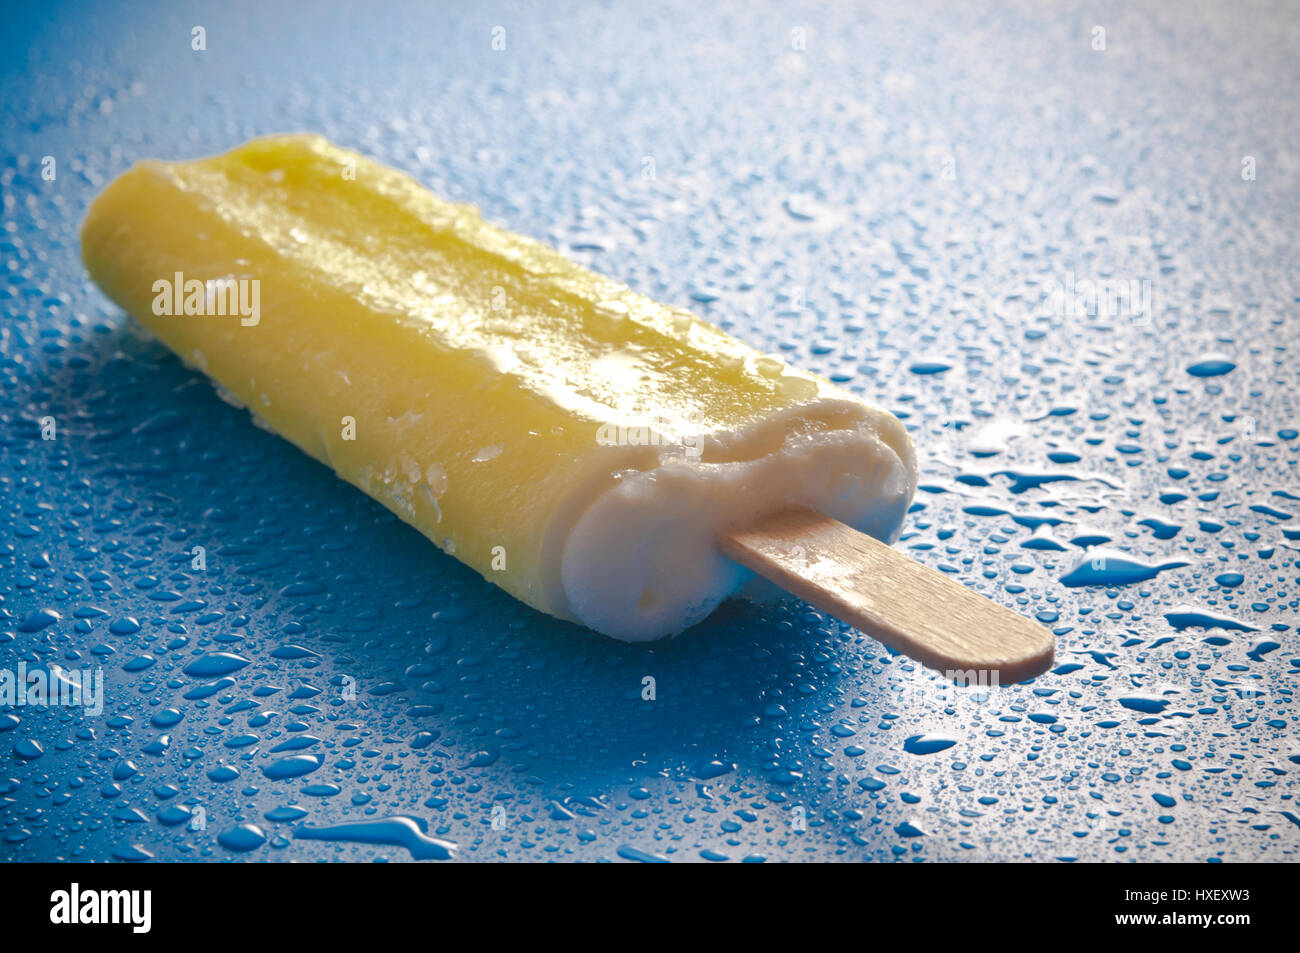 Frucht-Eis am Stiel Stockfotografie - Alamy